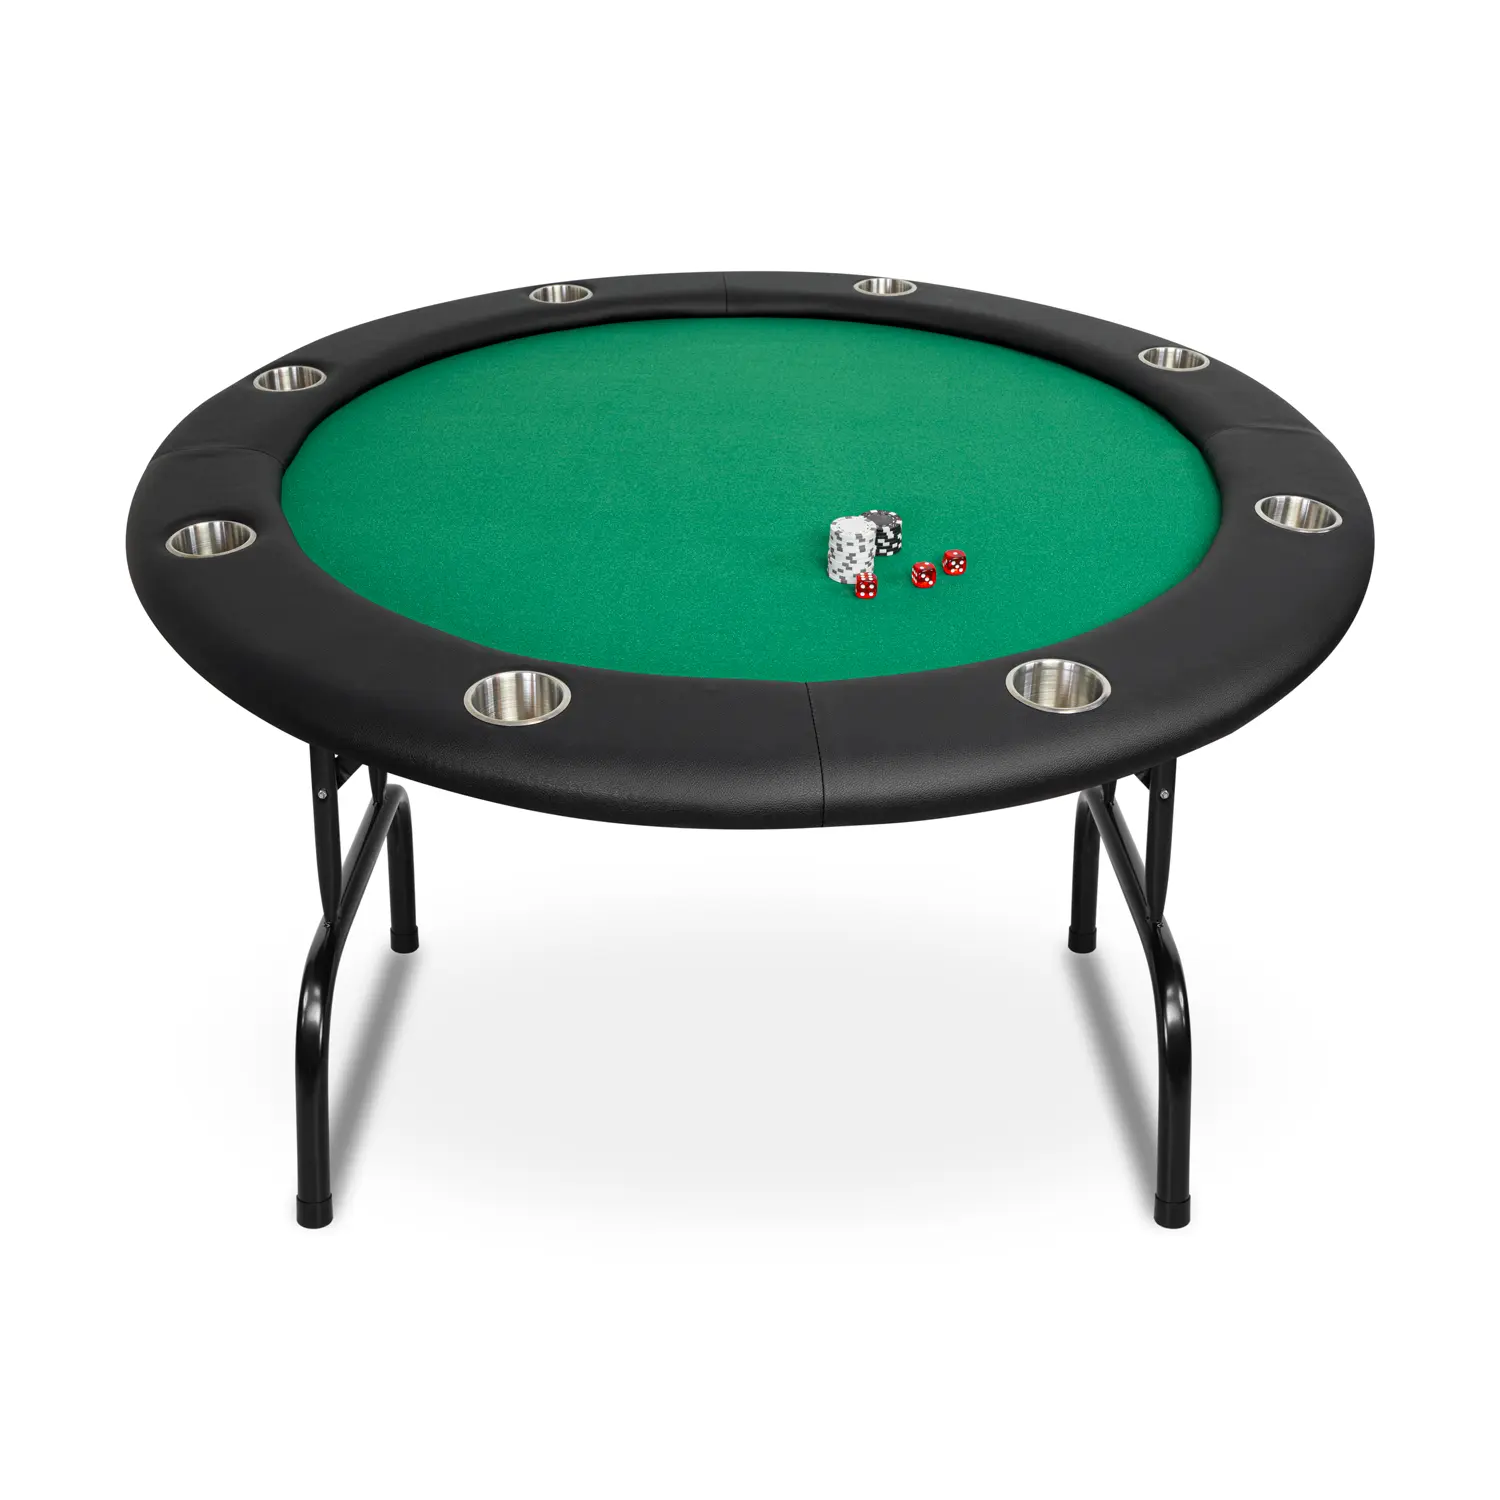 Pókerasztal 8 személyes 122cm zöld színben, kör alakú (PKTR48-GREEN)